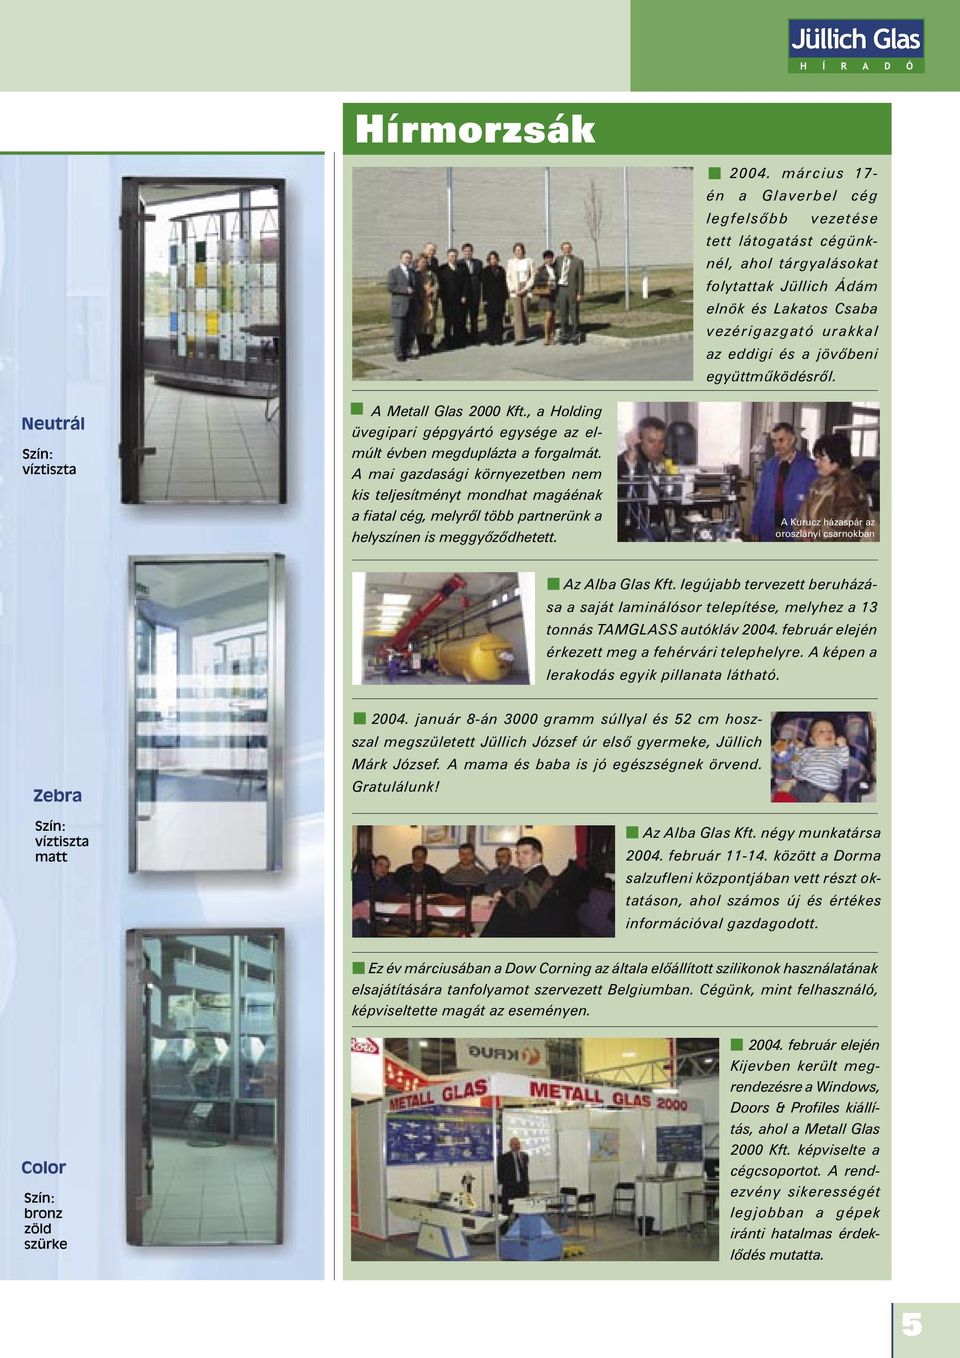 együttmûködésrôl. A Metall Glas 2000 Kft., a Holding üvegipari gépgyártó egysége az elmúlt évben megduplázta a forgalmát.